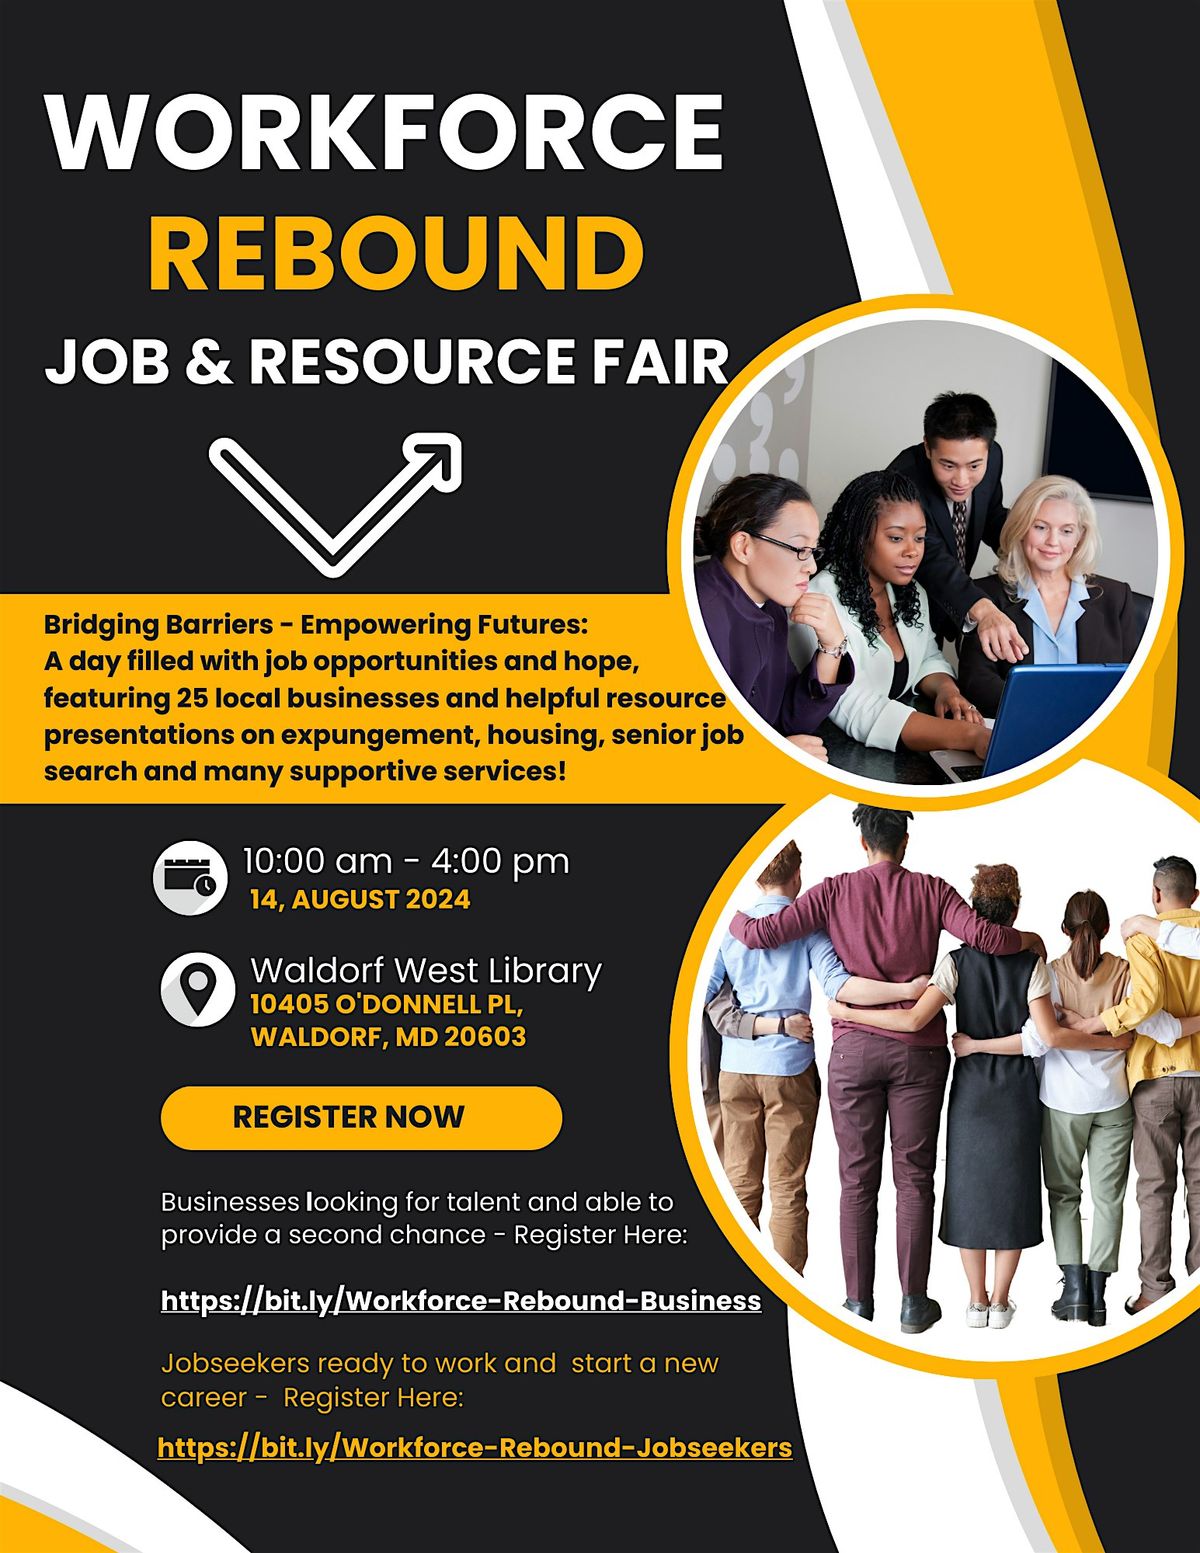 Workforce Rebound Job & Resource Fair - Business Registration